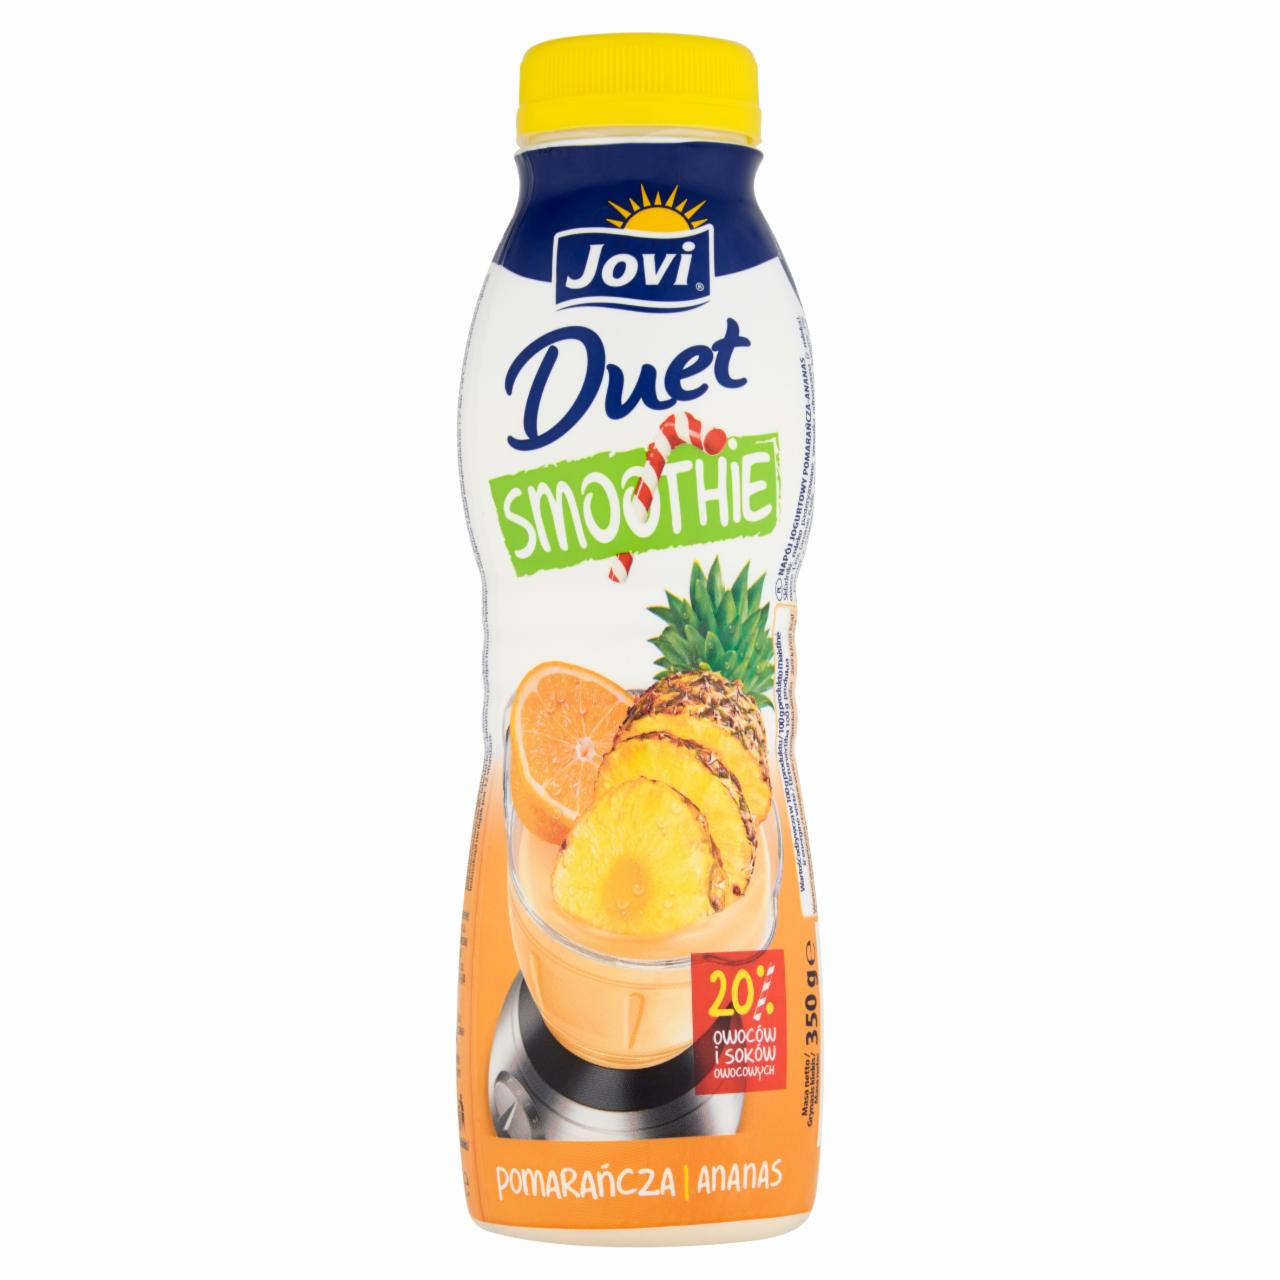 Zdjęcia - Jovi Duet Pomarańcza i ananas Napój jogurtowy 350 g